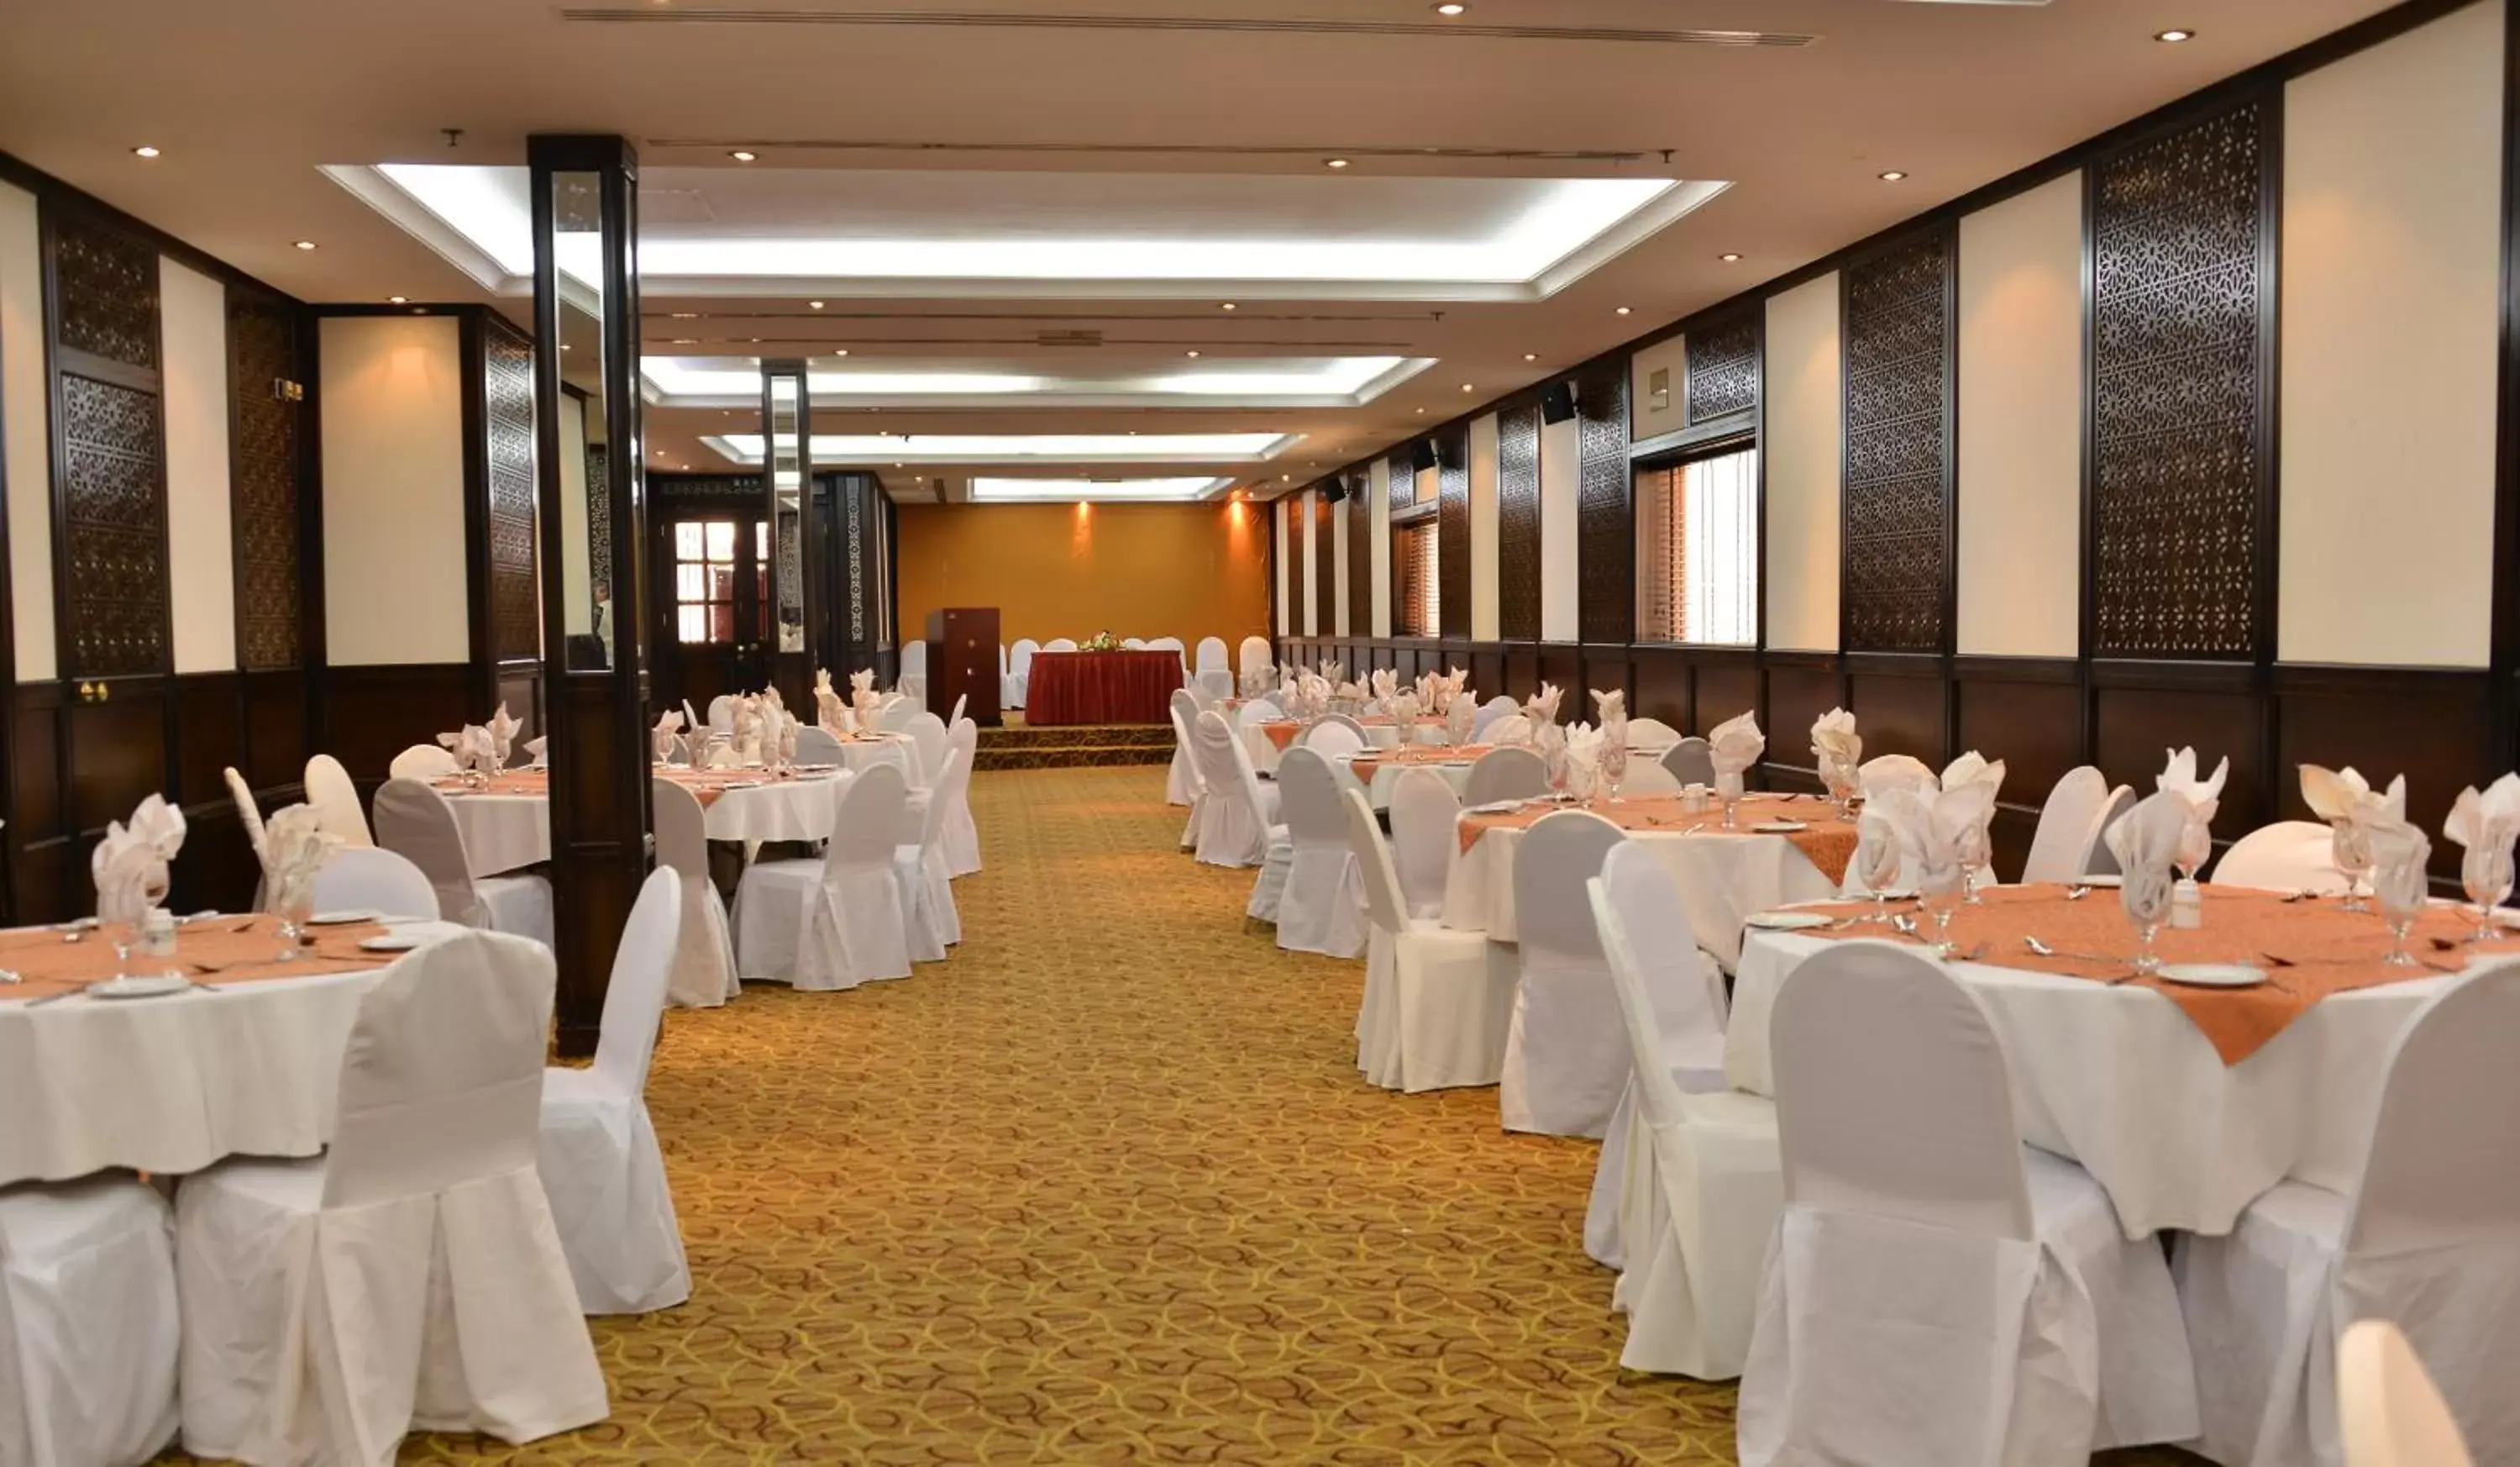 Banquet/Function facilities, Banquet Facilities in Rolla Suites Hotel -Former J5 Bur Dubai Hotel